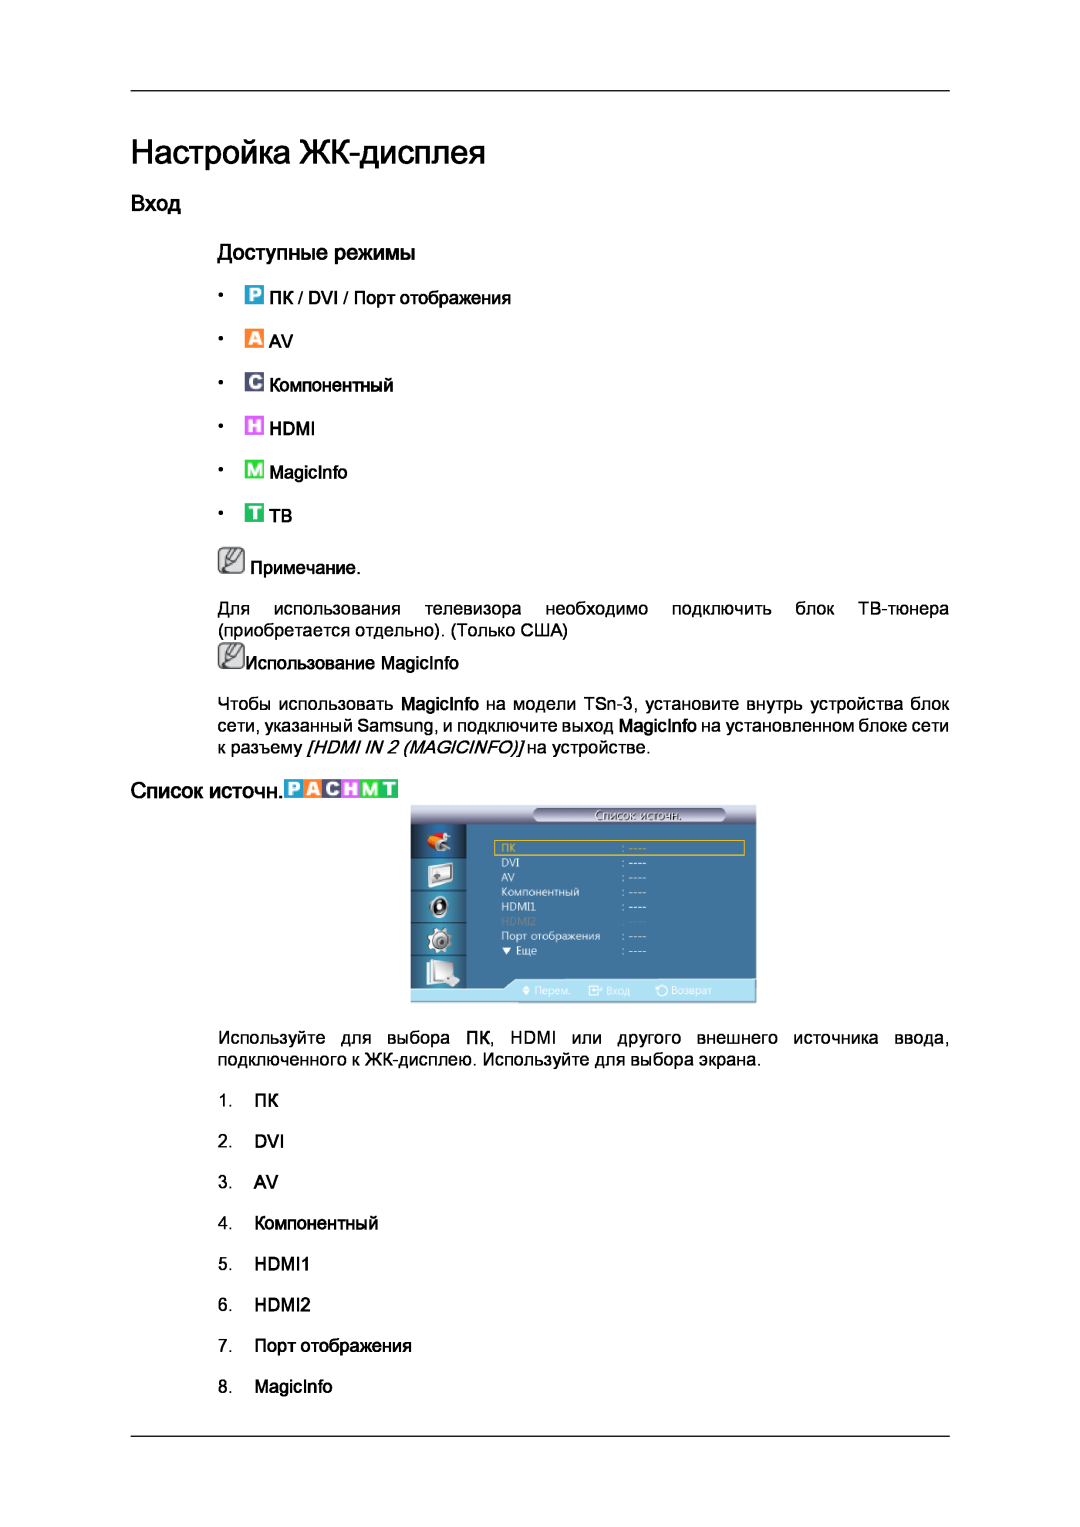 Samsung LH32CRTMBC/EN manual Настройка ЖК-дисплея, Вход Доступные режимы, Список источн, 7. Порт отображения 8. MagicInfo 